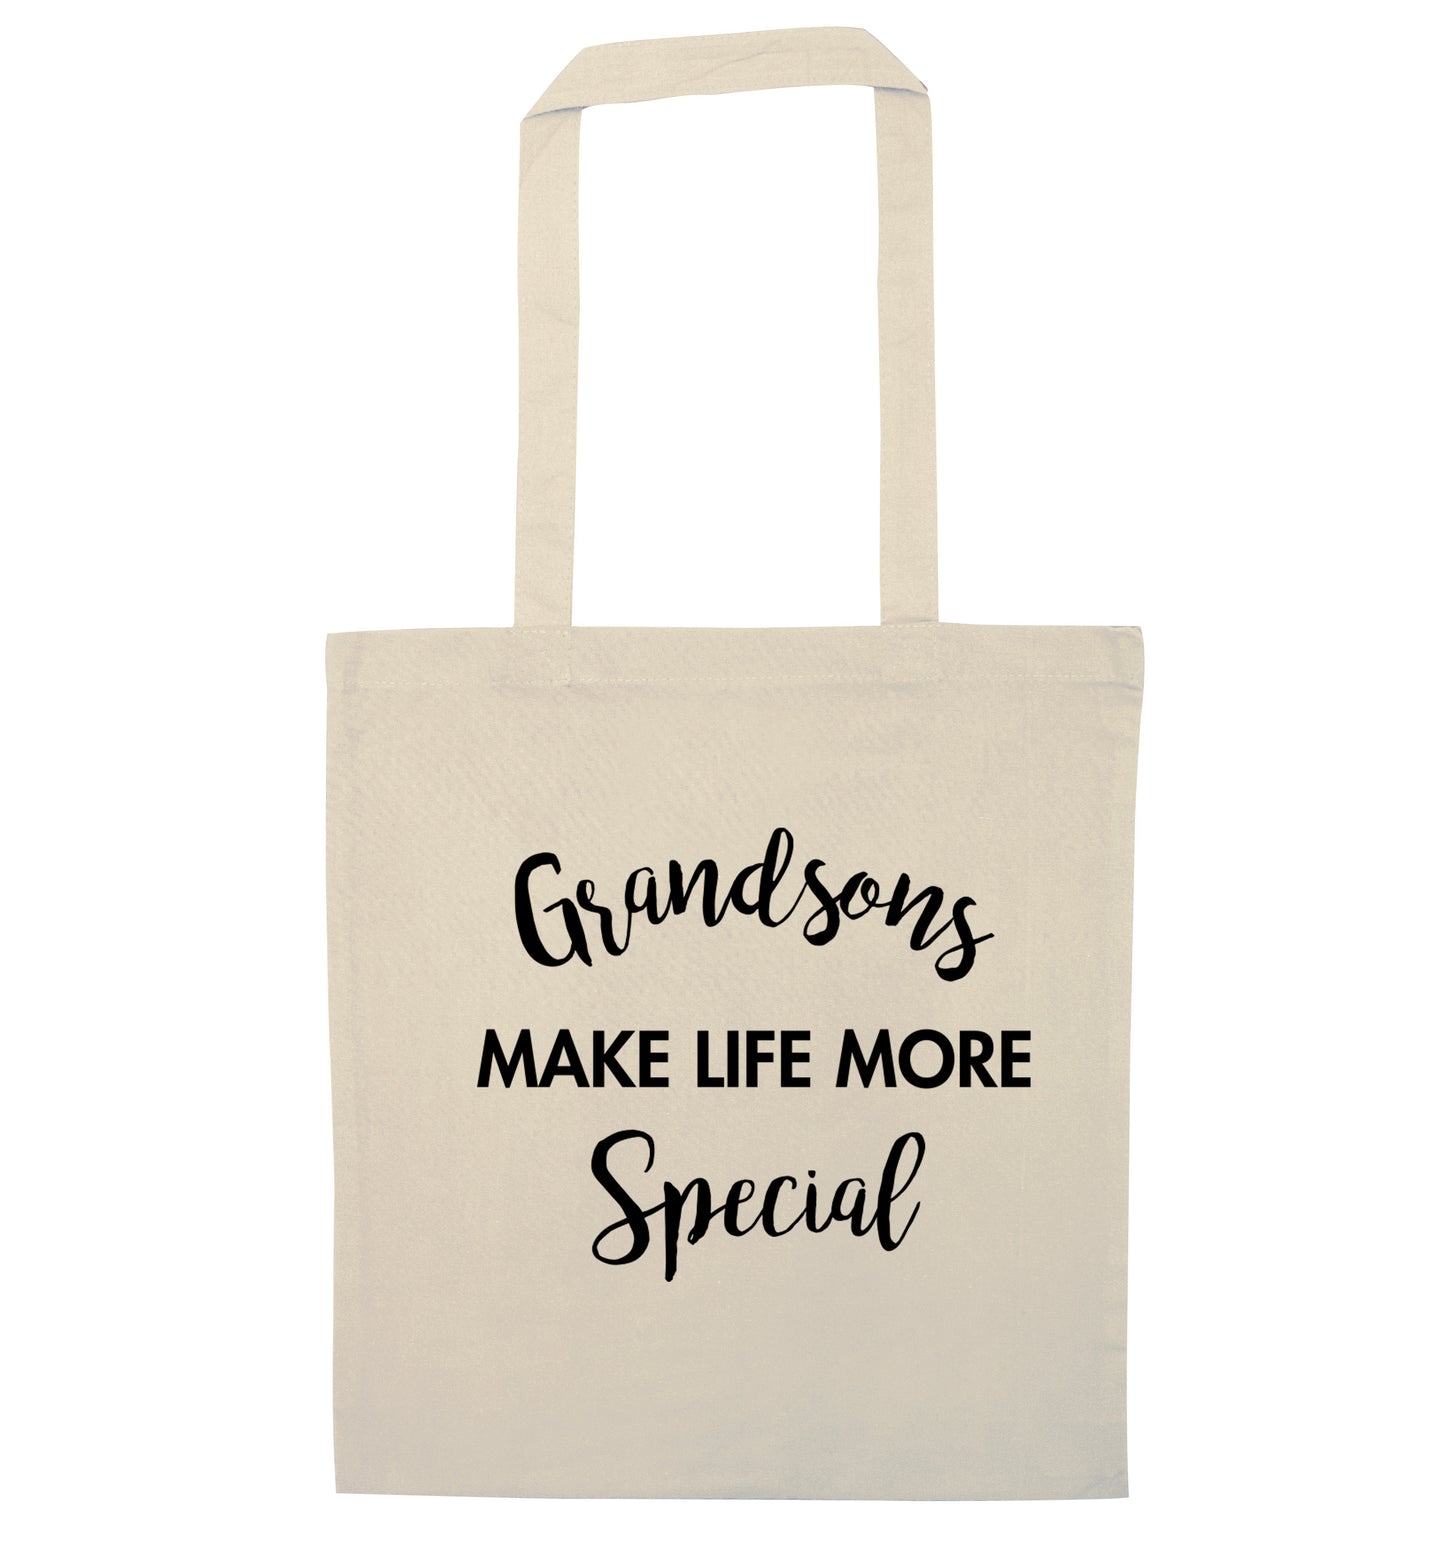 Grandsons make life more special natural tote bag